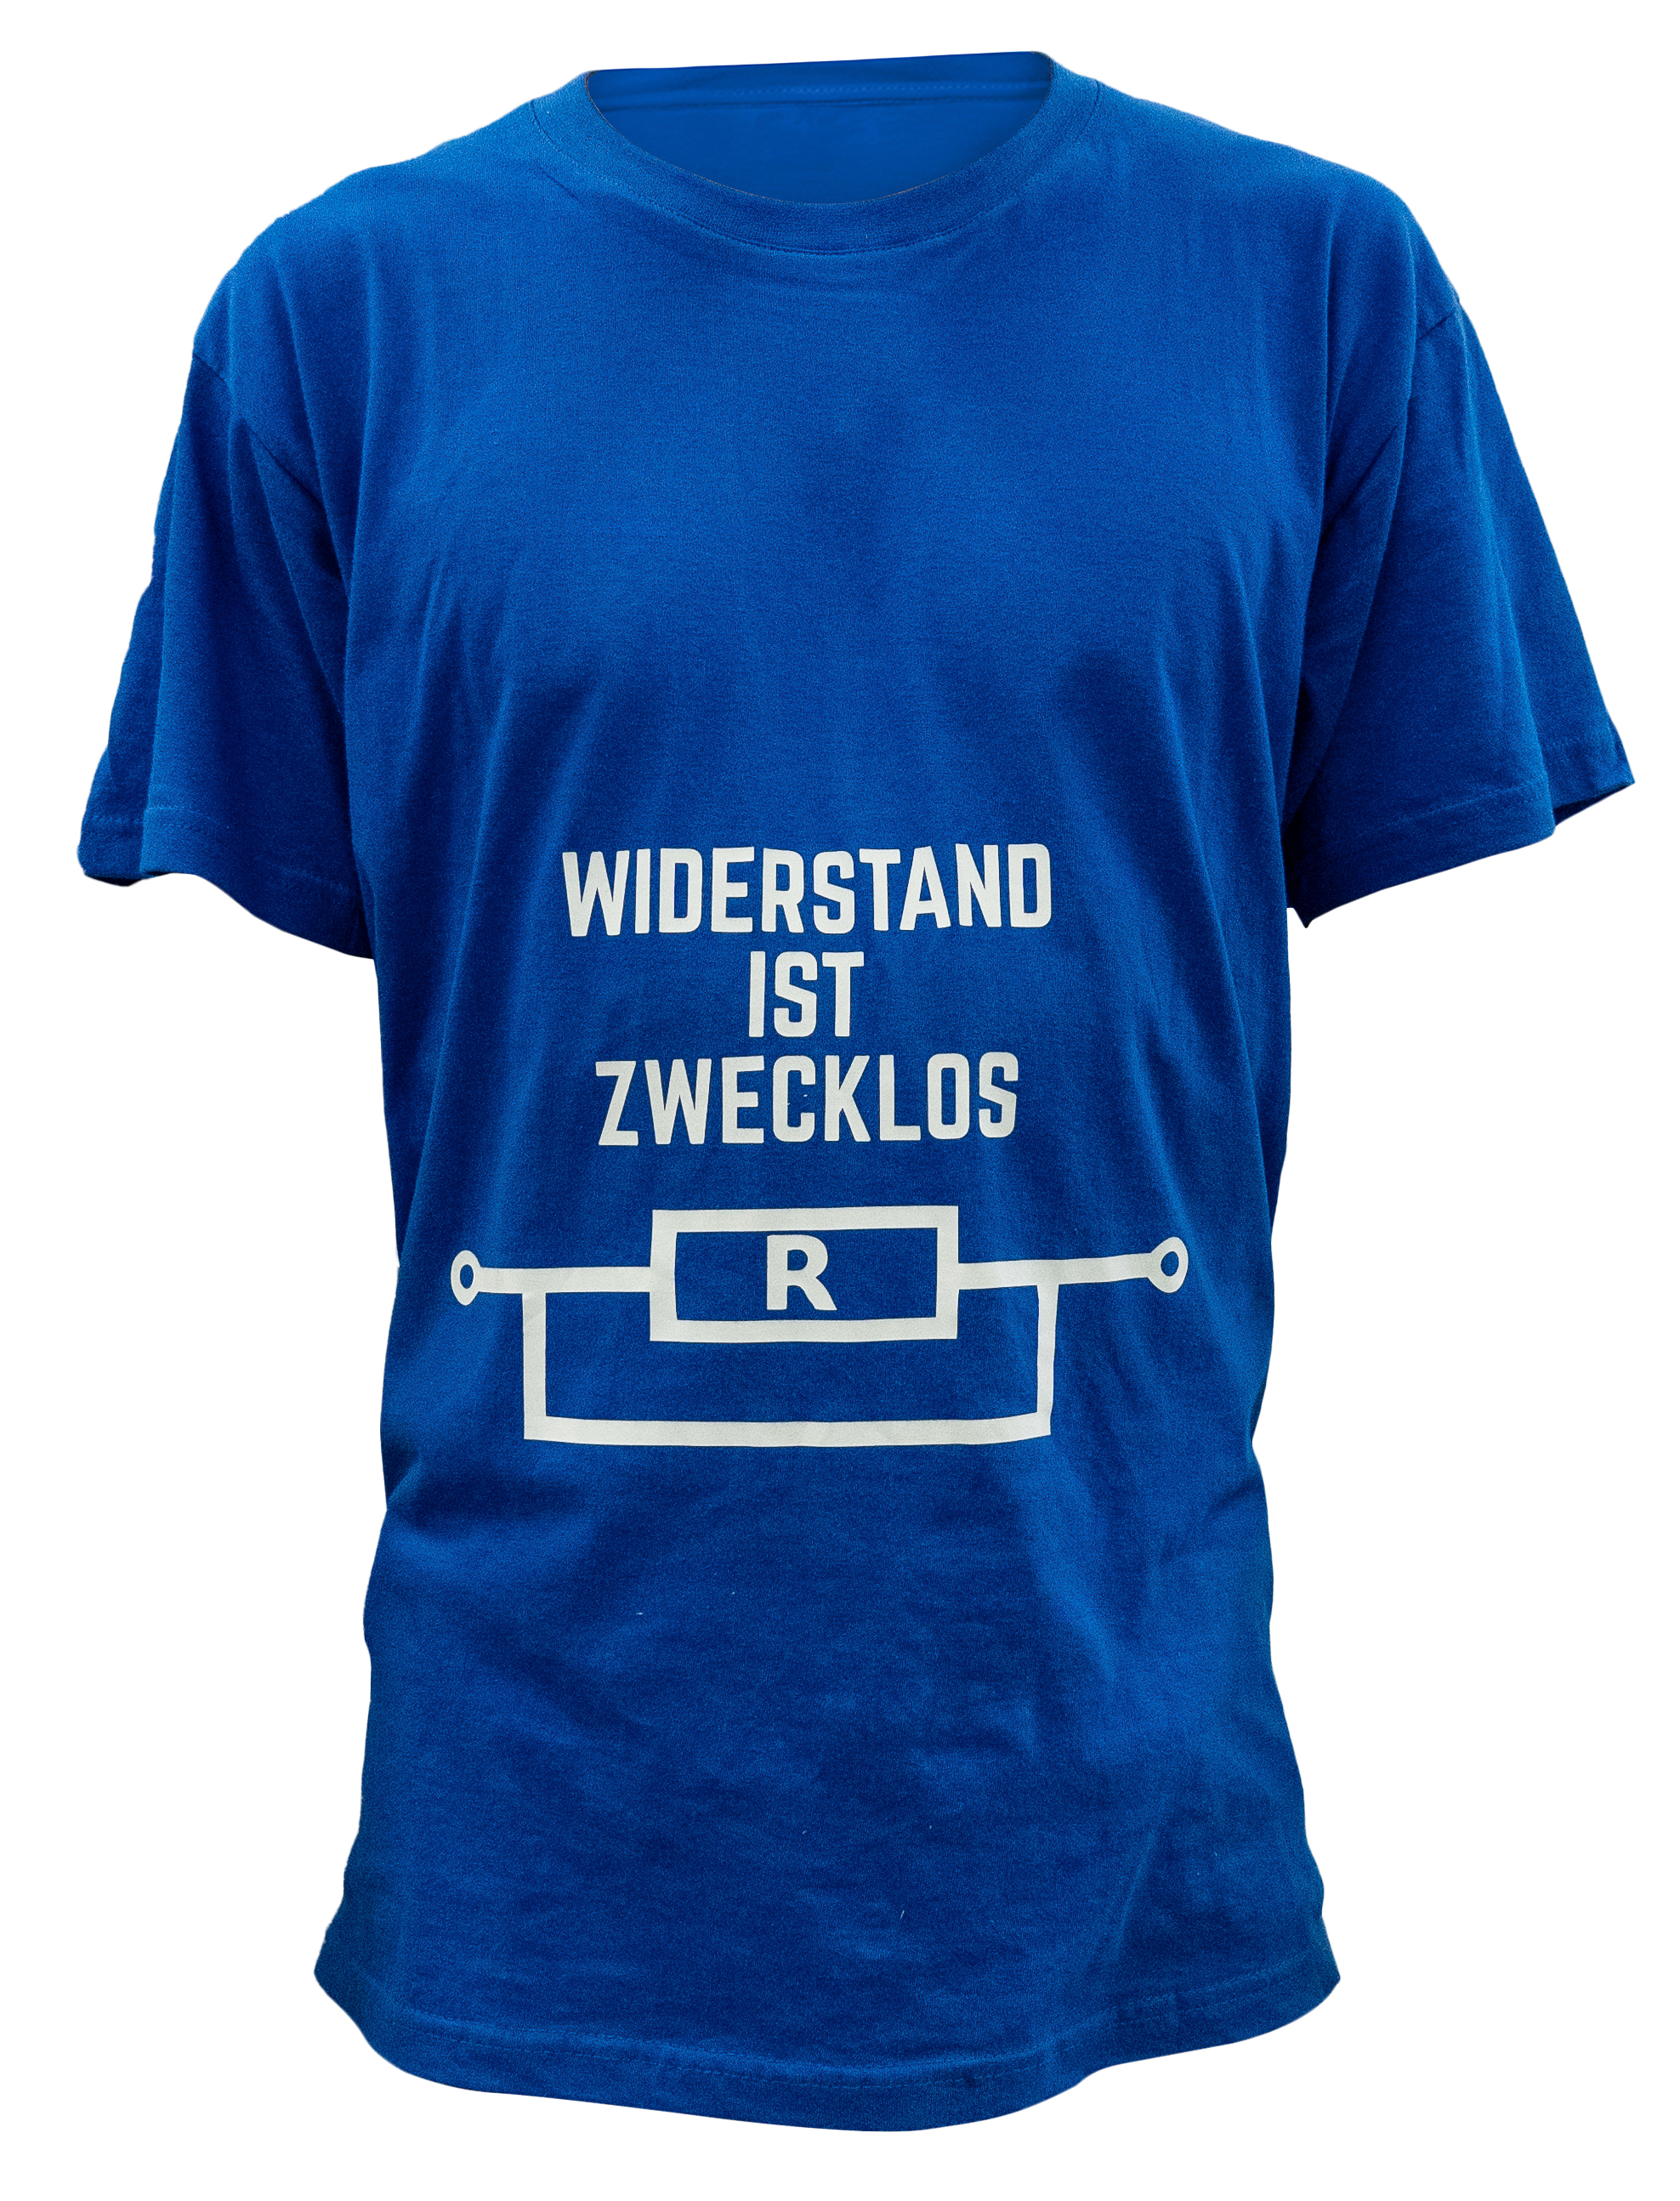 T-Shirt, Elektrobranche, Widerstand ist..., L, blau